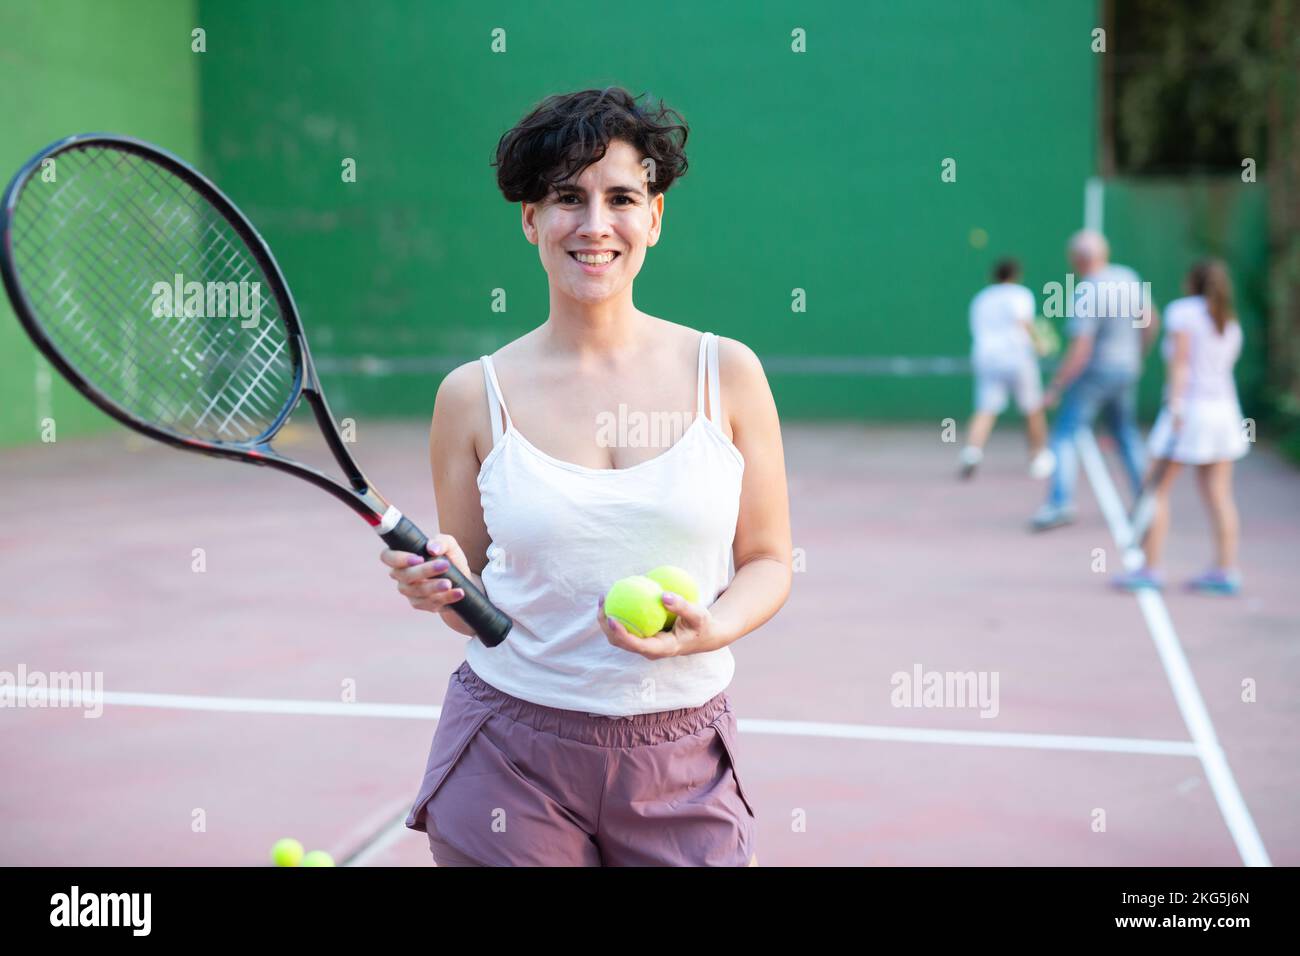 Portrait d'une femme latino debout sur le terrain de frontenis, tenant la raquette et le ballon Banque D'Images